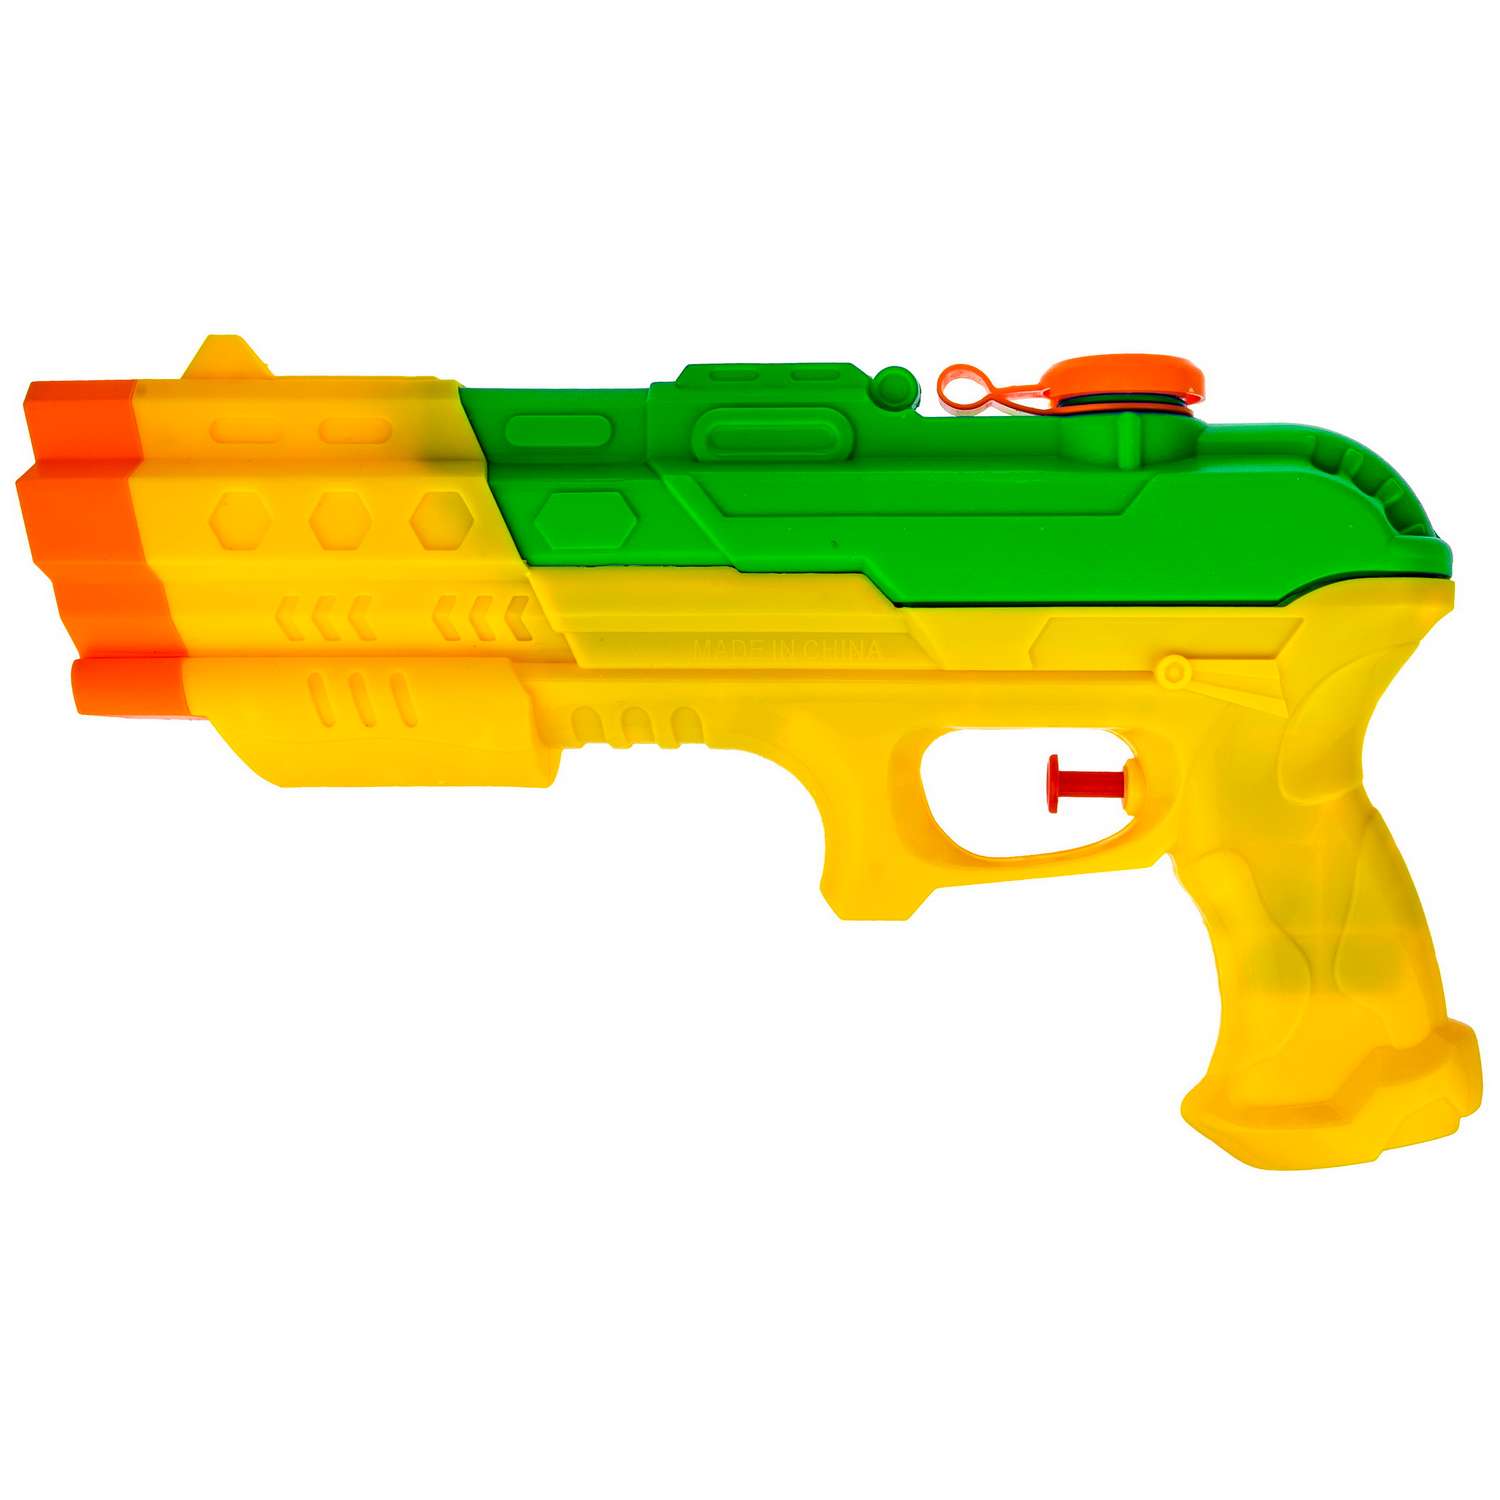 Водное оружие Aqua мания Пистолет жёлто-зеленый - фото 1